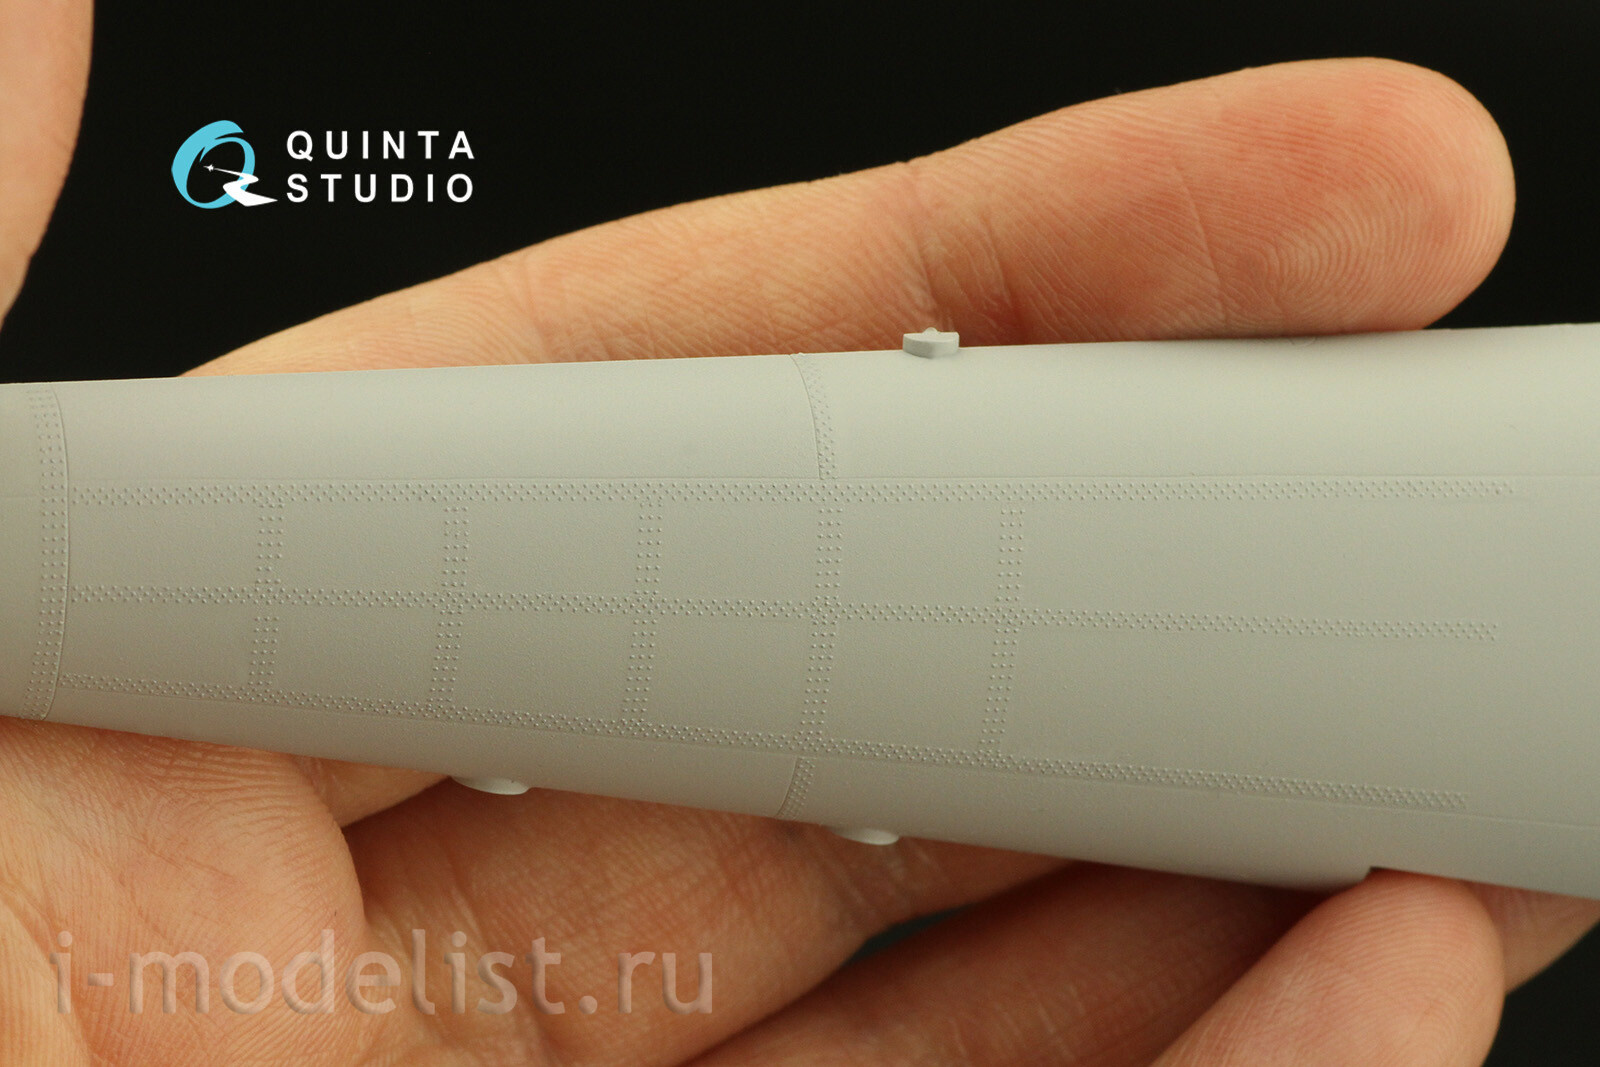 QRV-032 Quinta Studio 1/48 Тройные клепочные ряды (размер клепки 0.15 mm, интервал 0.6 mm), белые, общая длина 4.4 m